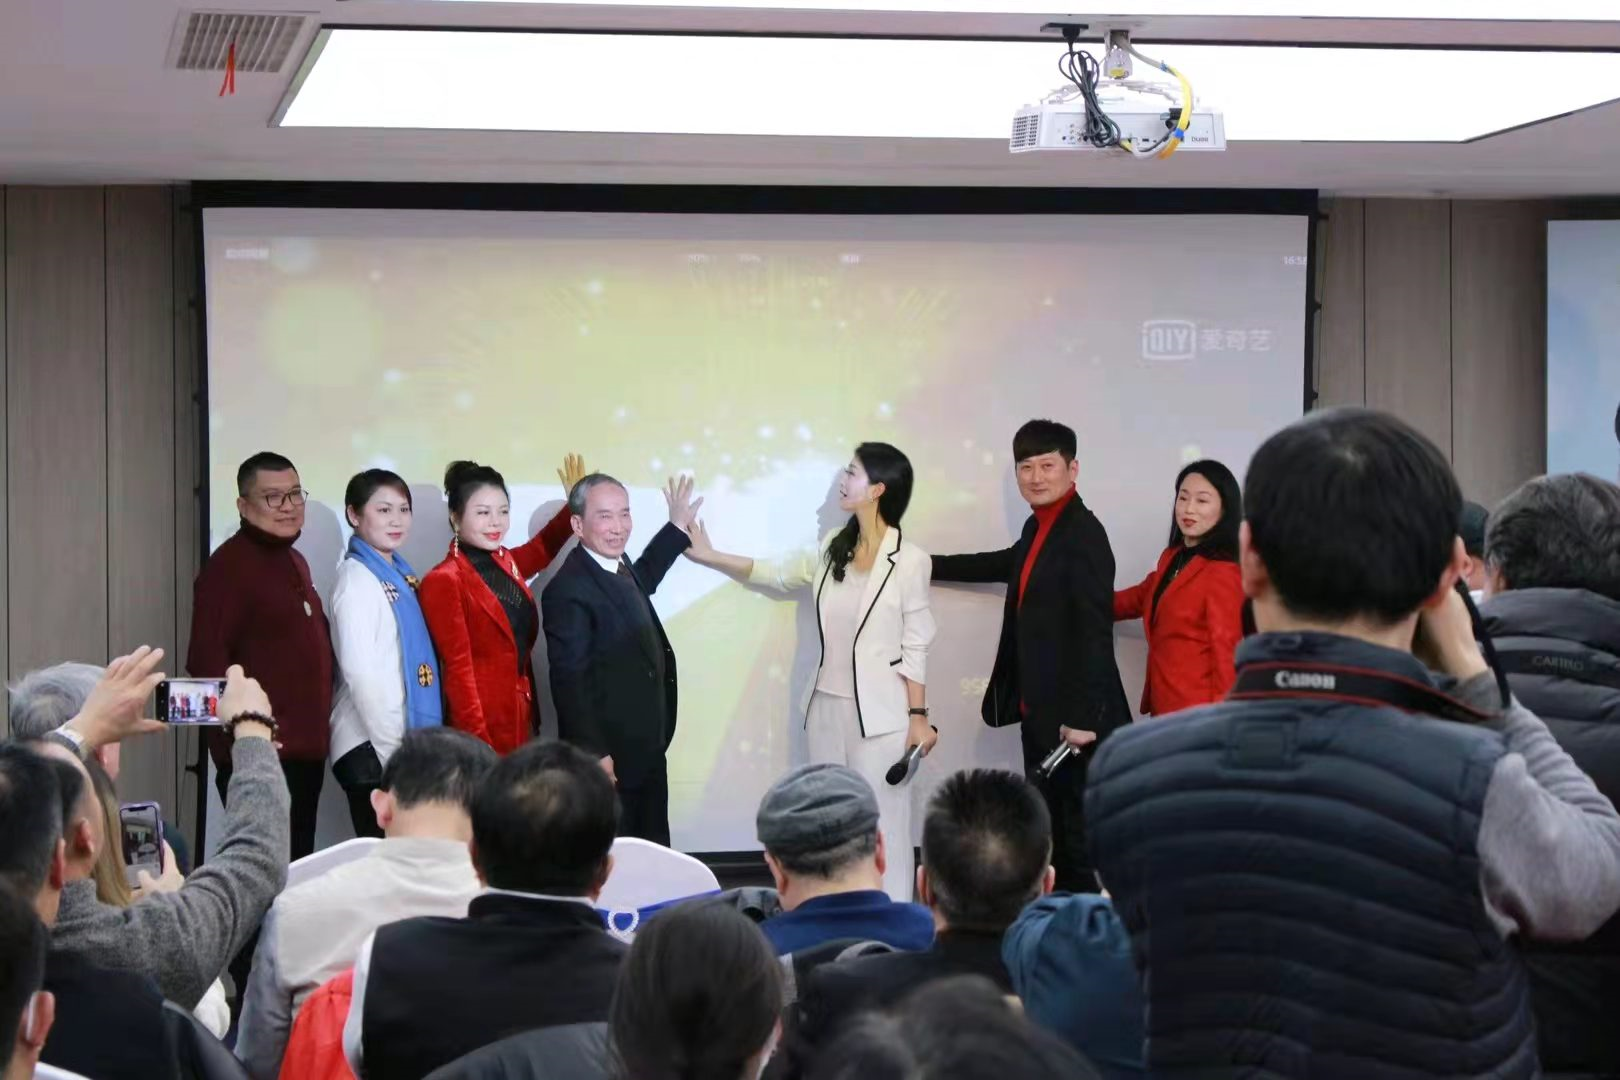 中国新闻传媒集团出席中华美魔江苏启动仪式暨姜蓉蓉新歌发布会